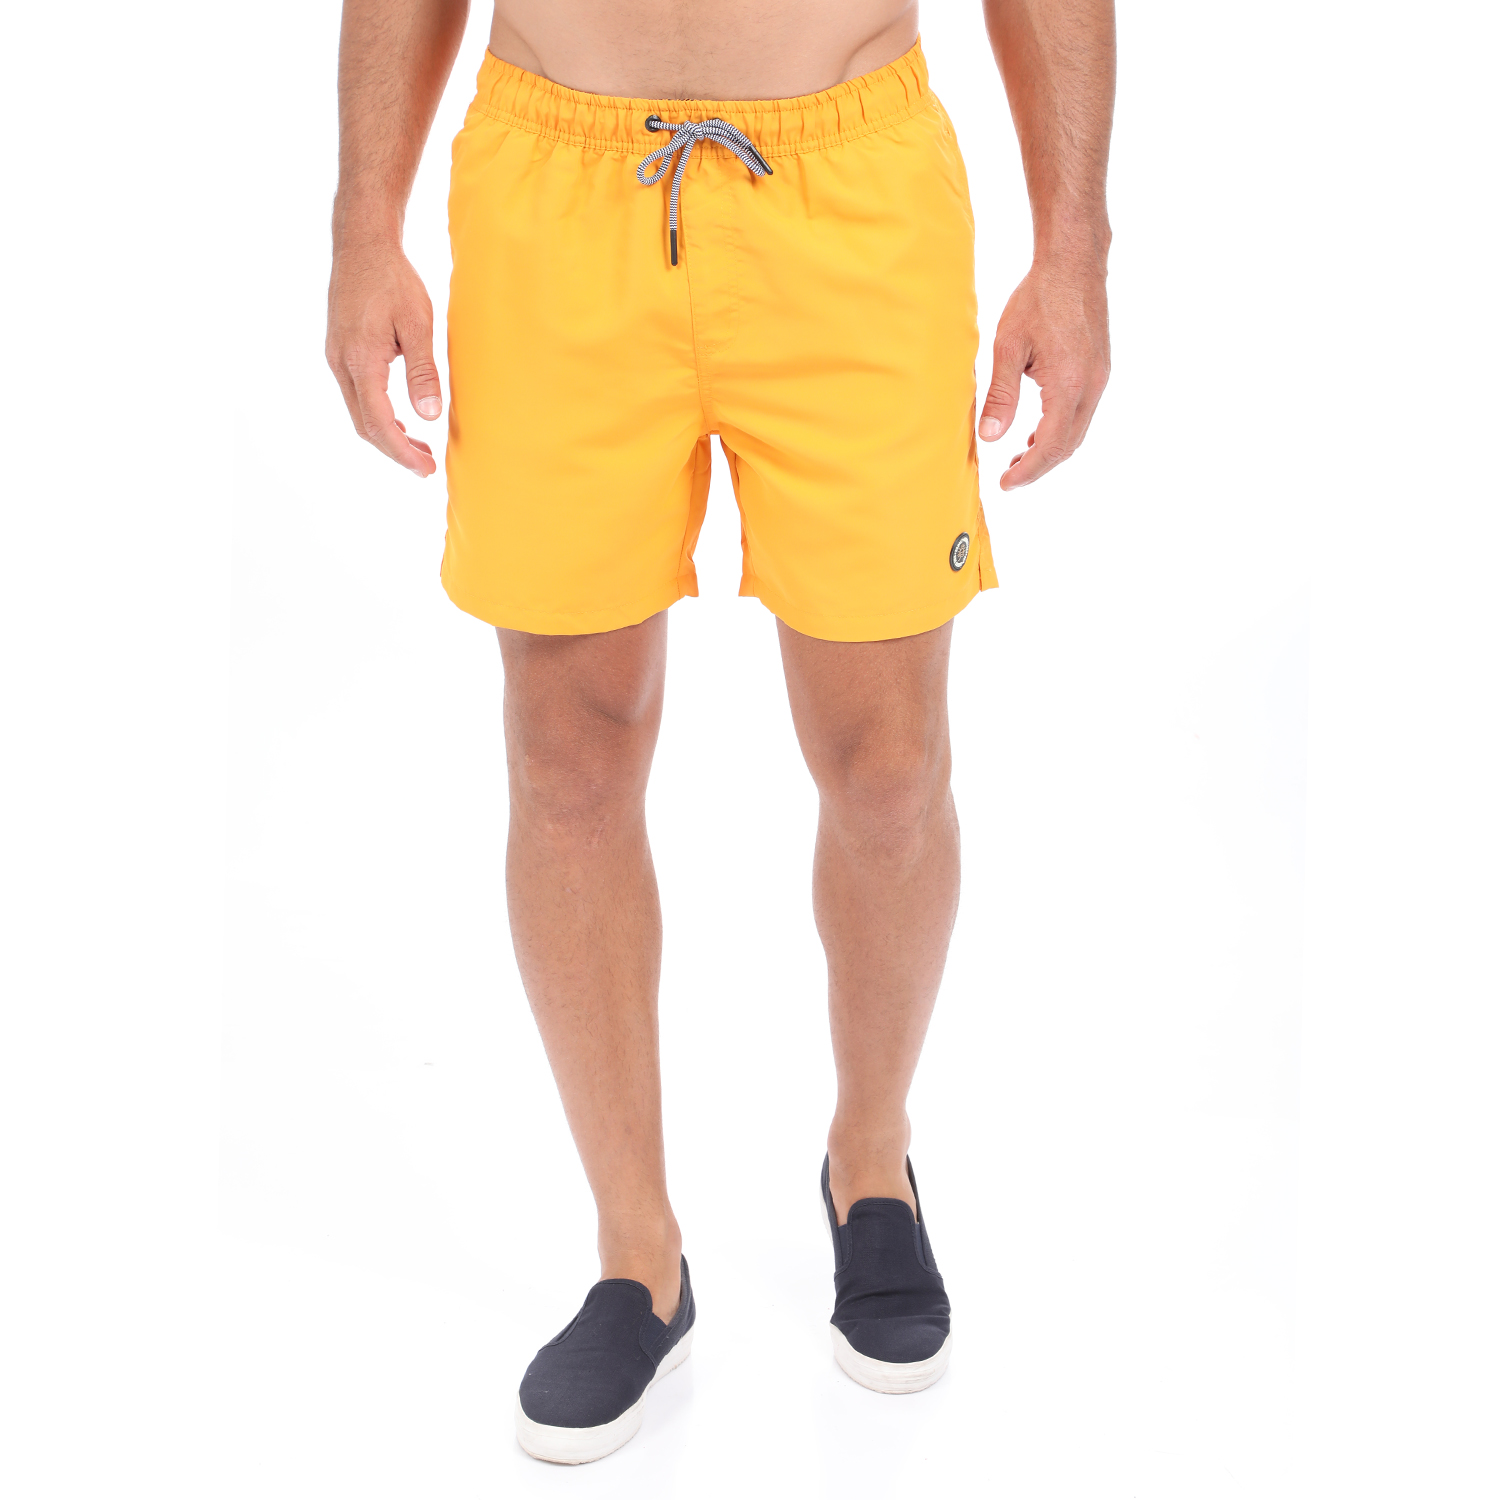 Ανδρικά/Ρούχα/Μαγιό/Σορτς CATAMARAN SAILWEAR - Ανδρικό μαγιό σορτς CATAMARAN SAILWEAR κίτρινο